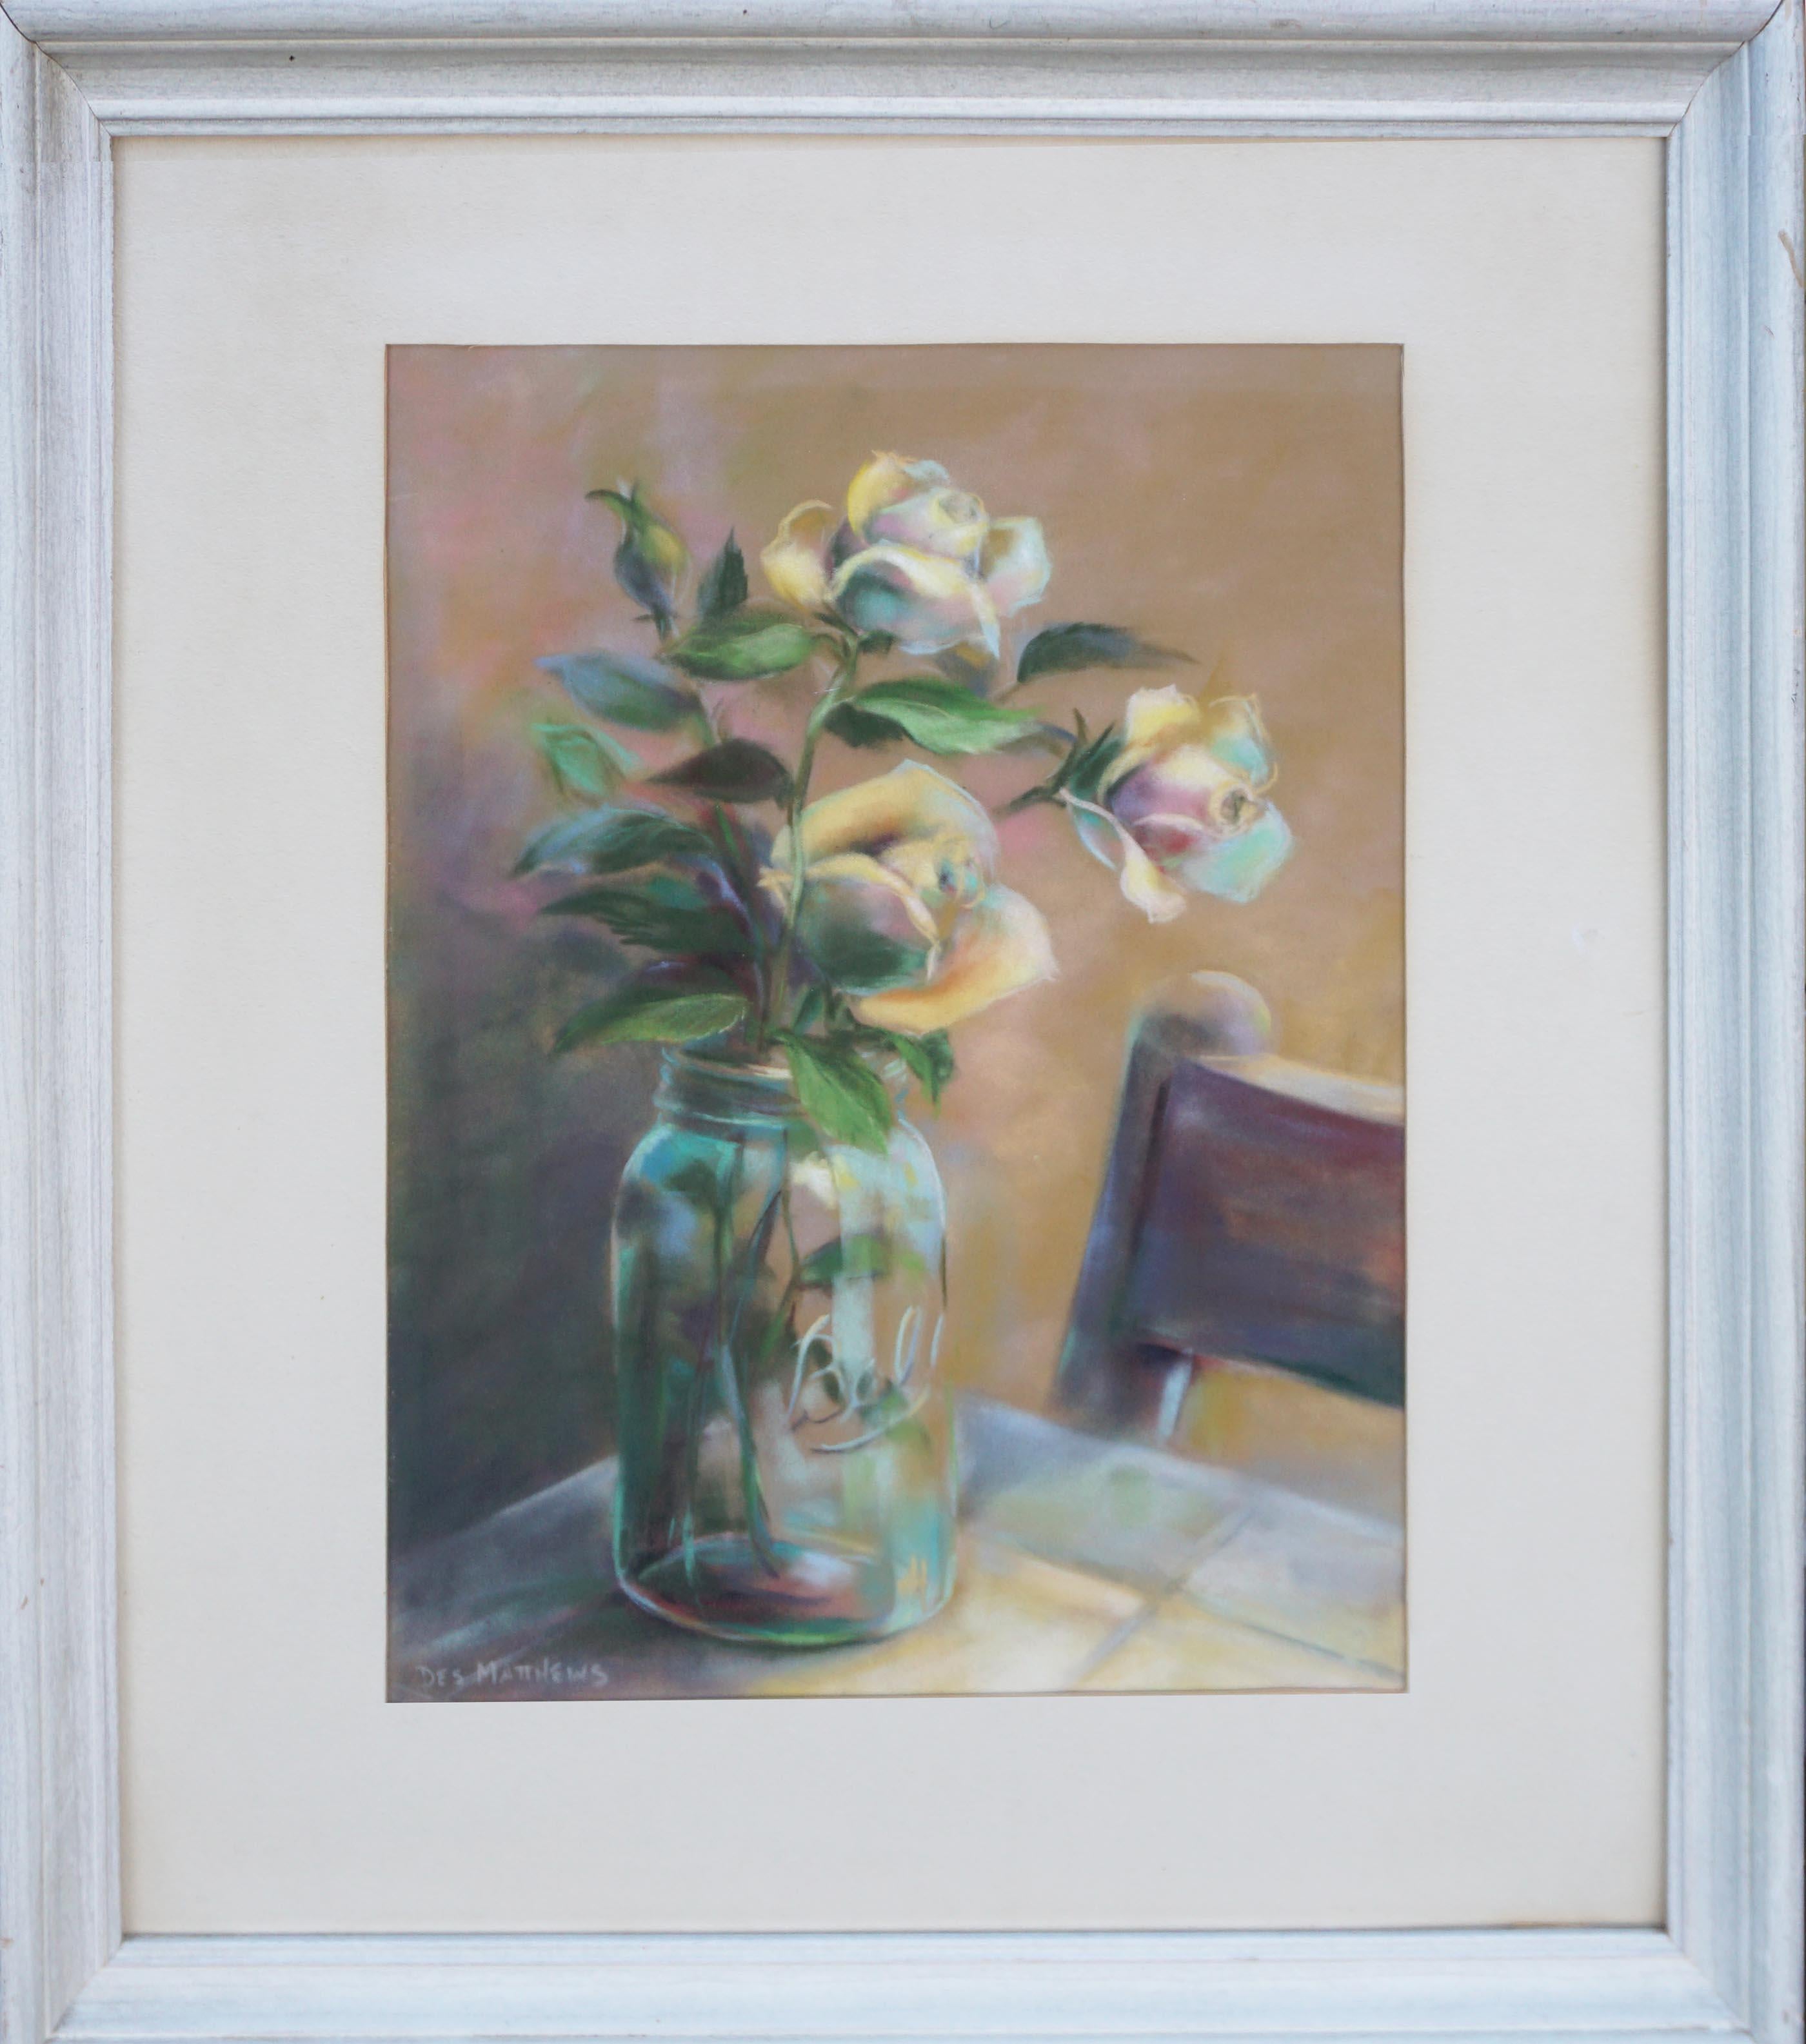 Des Matthews Interior Painting - Rose in Ball Jar, Vintage Floral Pastel Still-Life